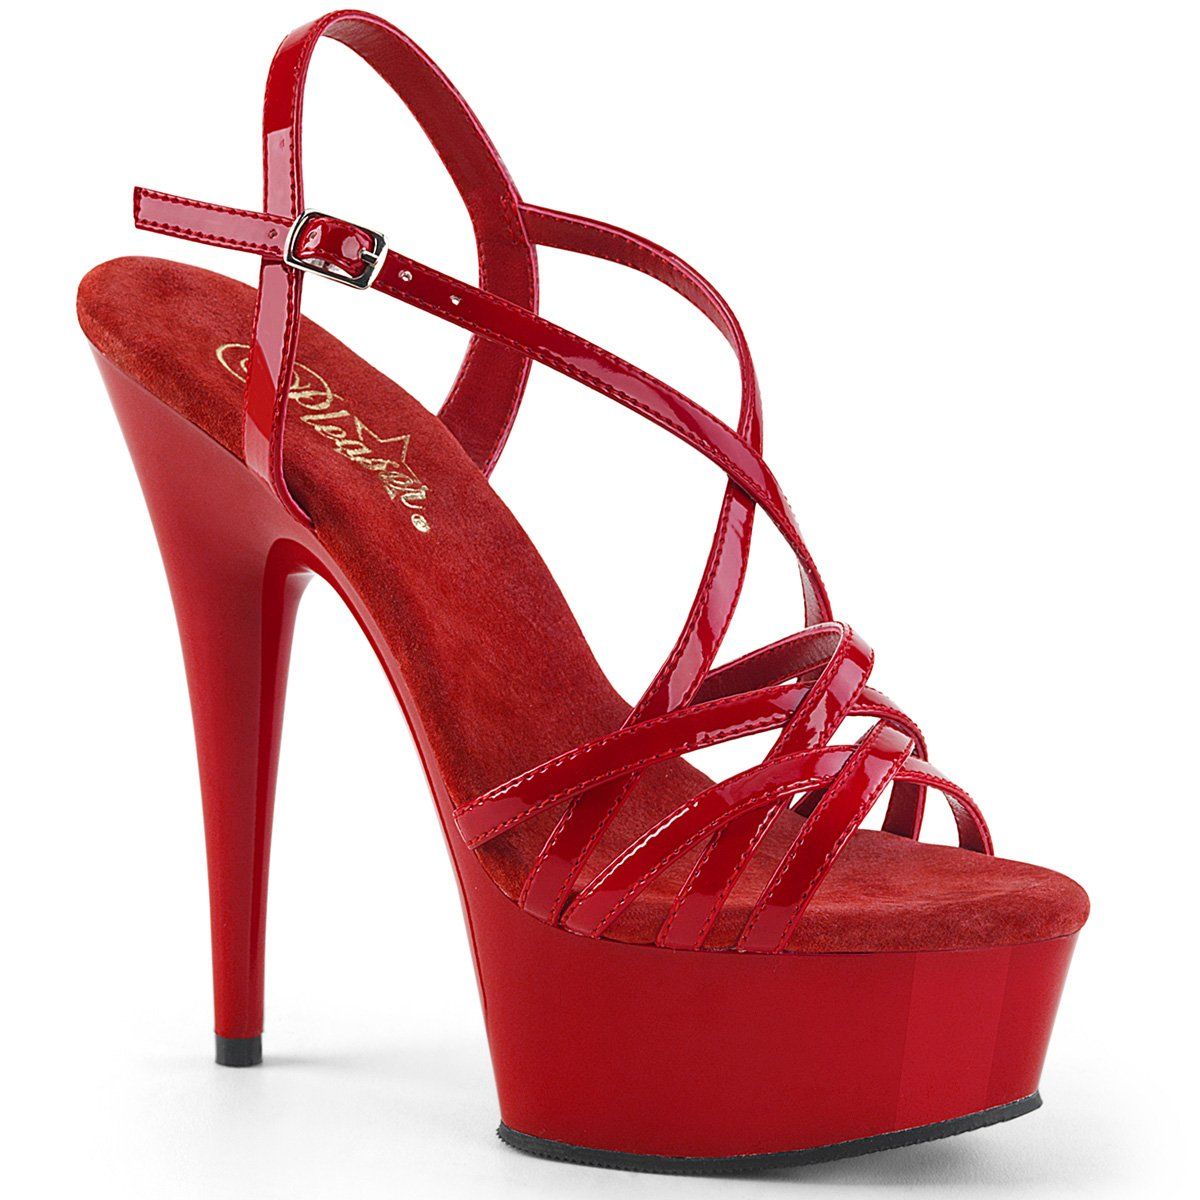 DELIGHT-613 Red Patent Platform Sandal Pleaser